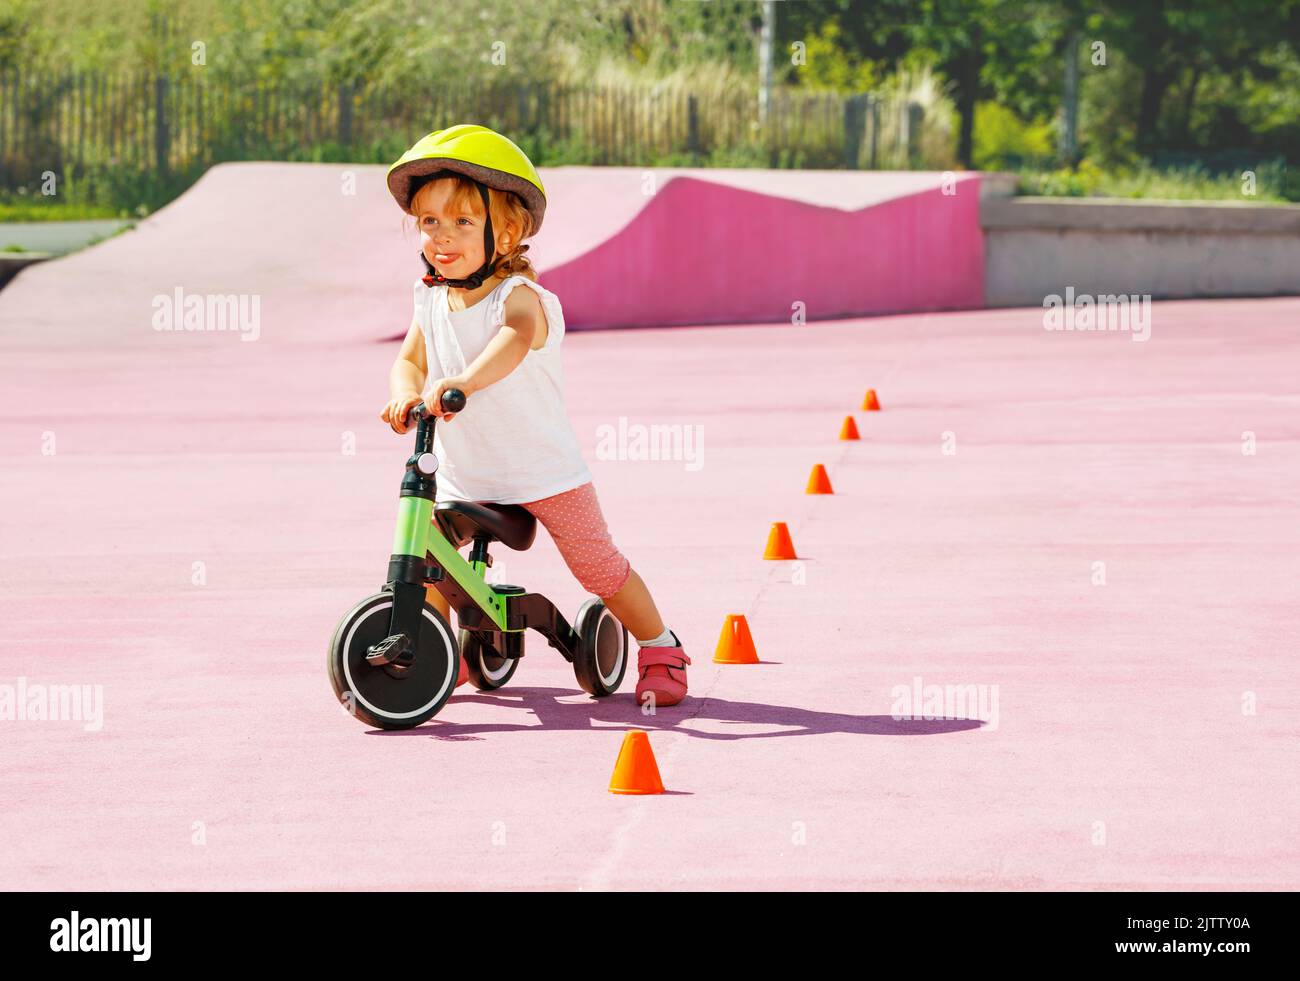 Petite bicyclette de trois roues de petite fille de bébé autour des cônes orange Banque D'Images